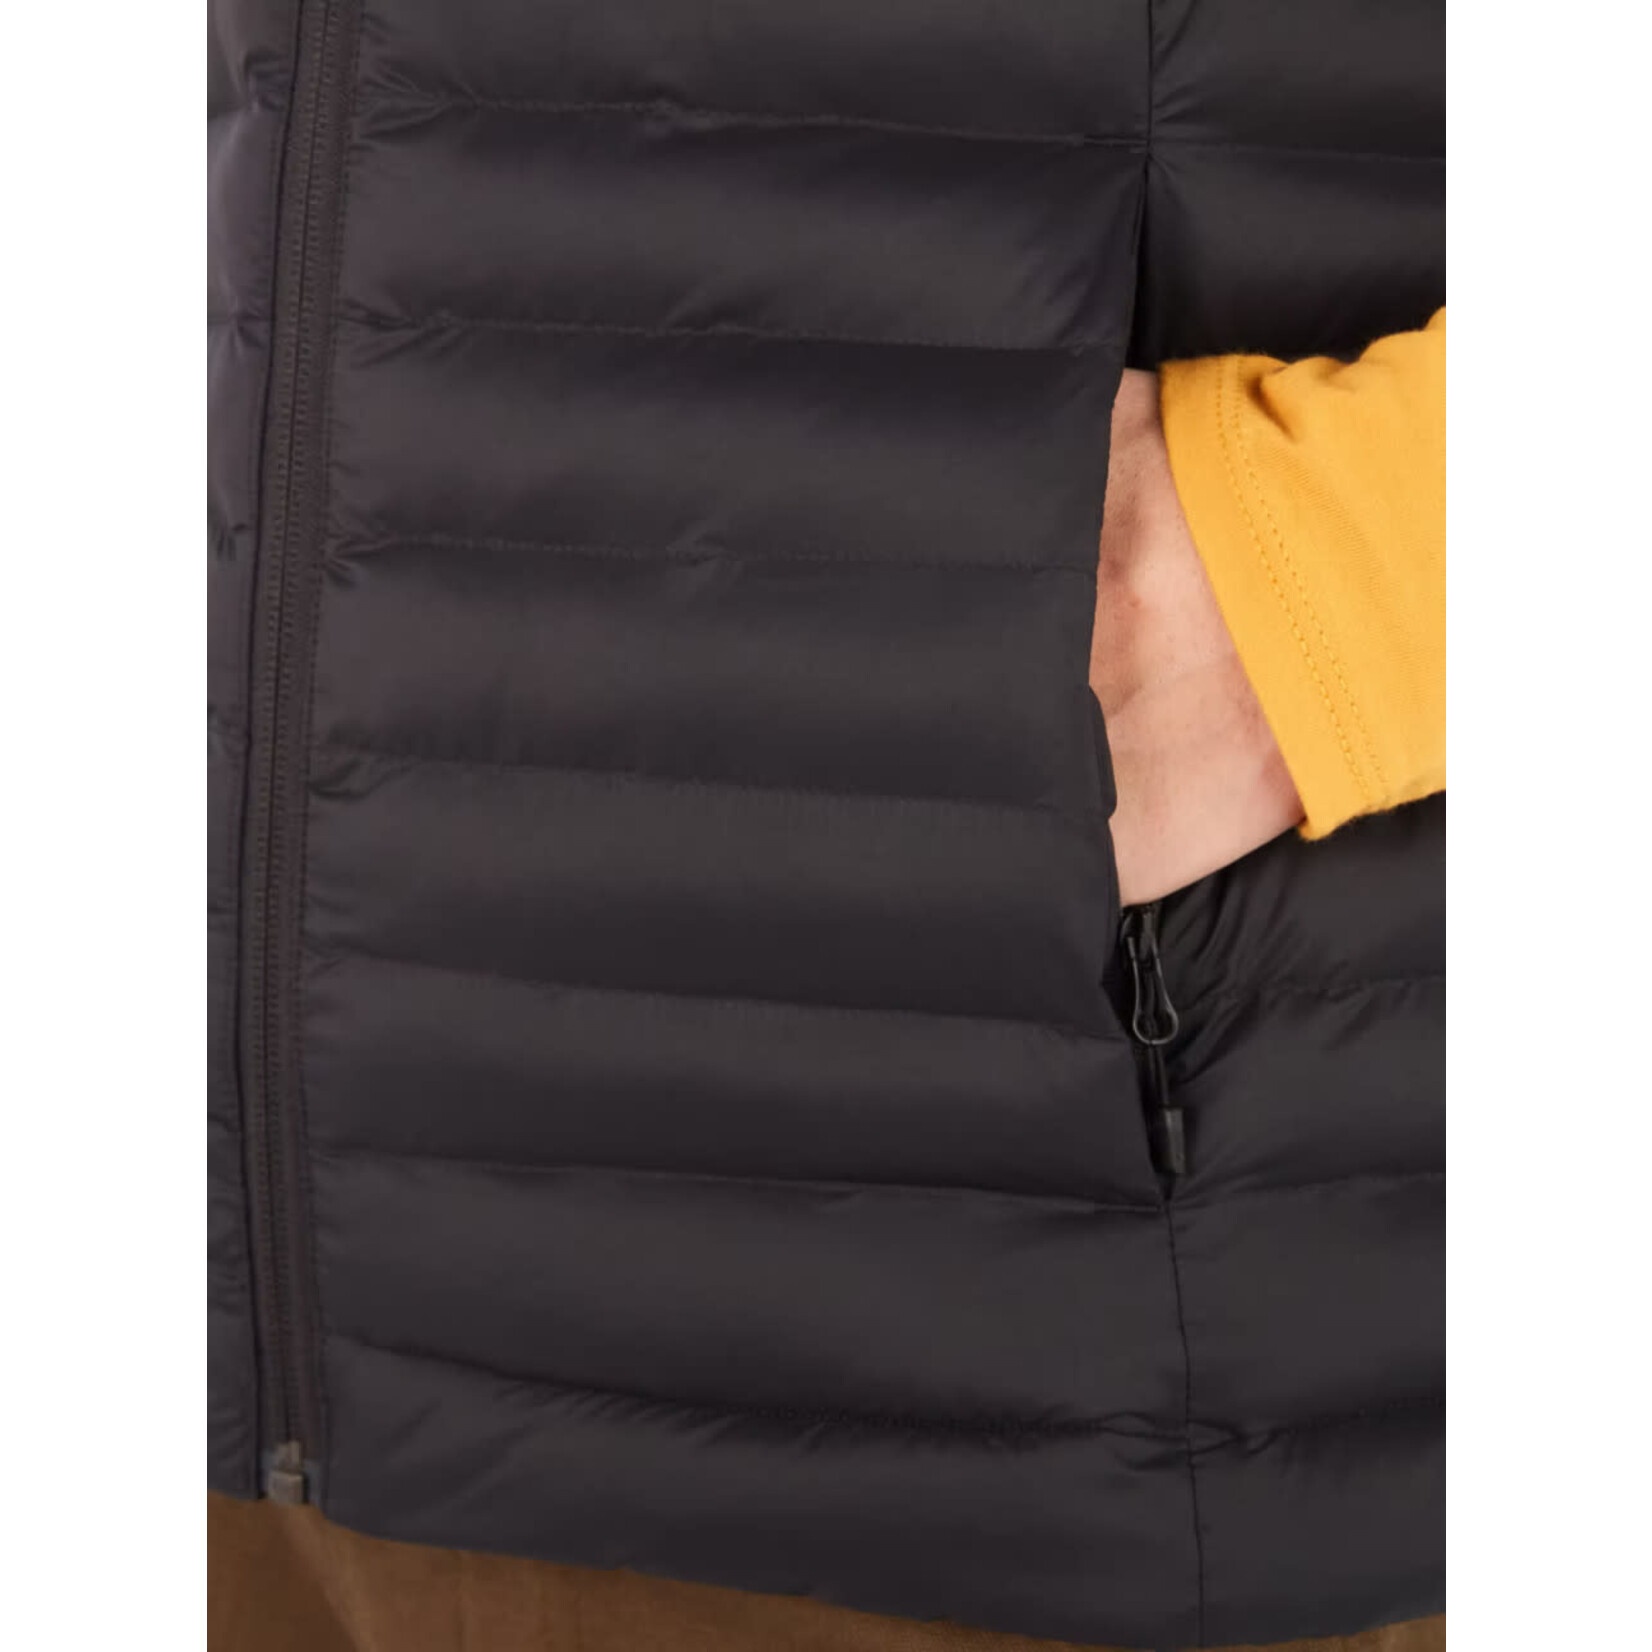 Marmot Echo Featherless Vest (manteau pour femme)